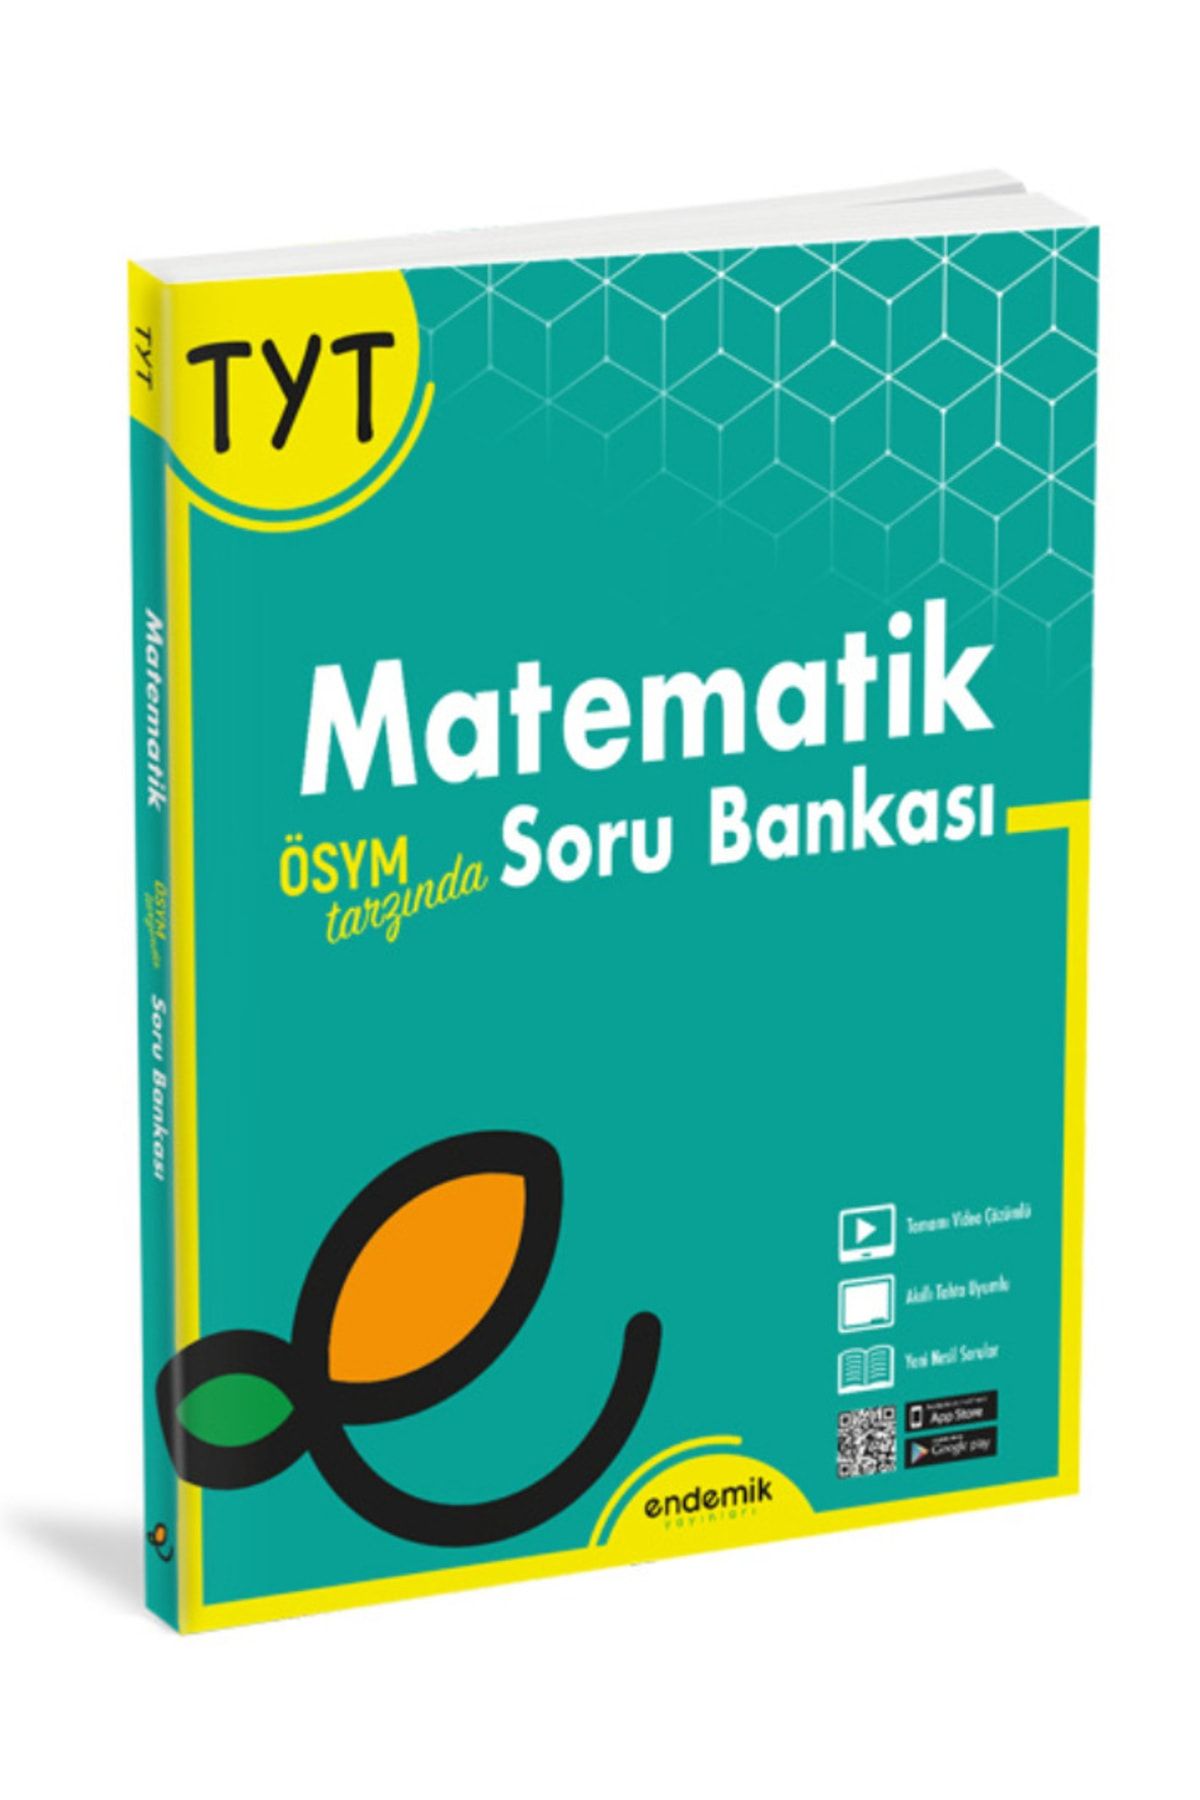 Endemik Yayınları Tyt Matematik Soru Bankası Endemiklise (9. Ve 10. Sınıf) (kitapsenin'e Özel Güncel Baskıdır)